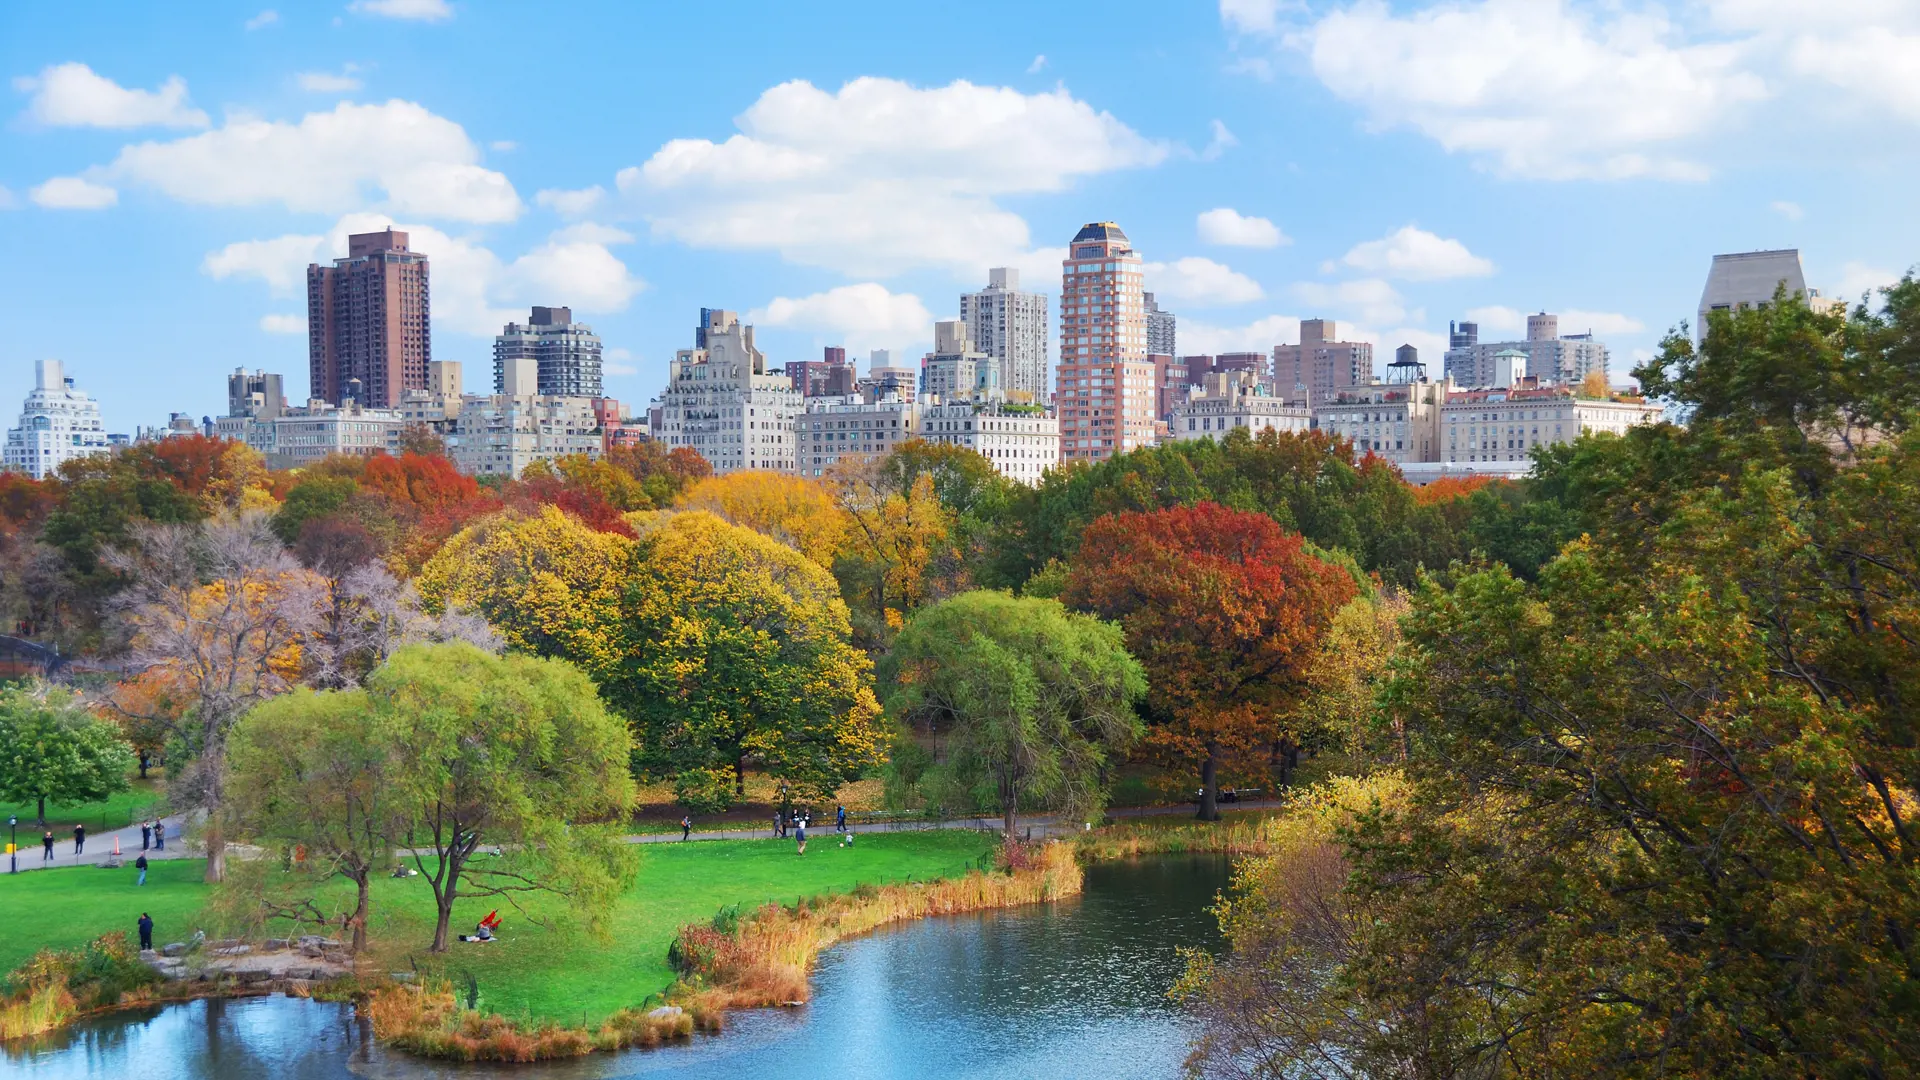 NEW YORK - Central park ligger som en imødekommende oase midt på Manhattan, og her finder du rekrative områder og diverse kulturarrangementer, Check Point Travel